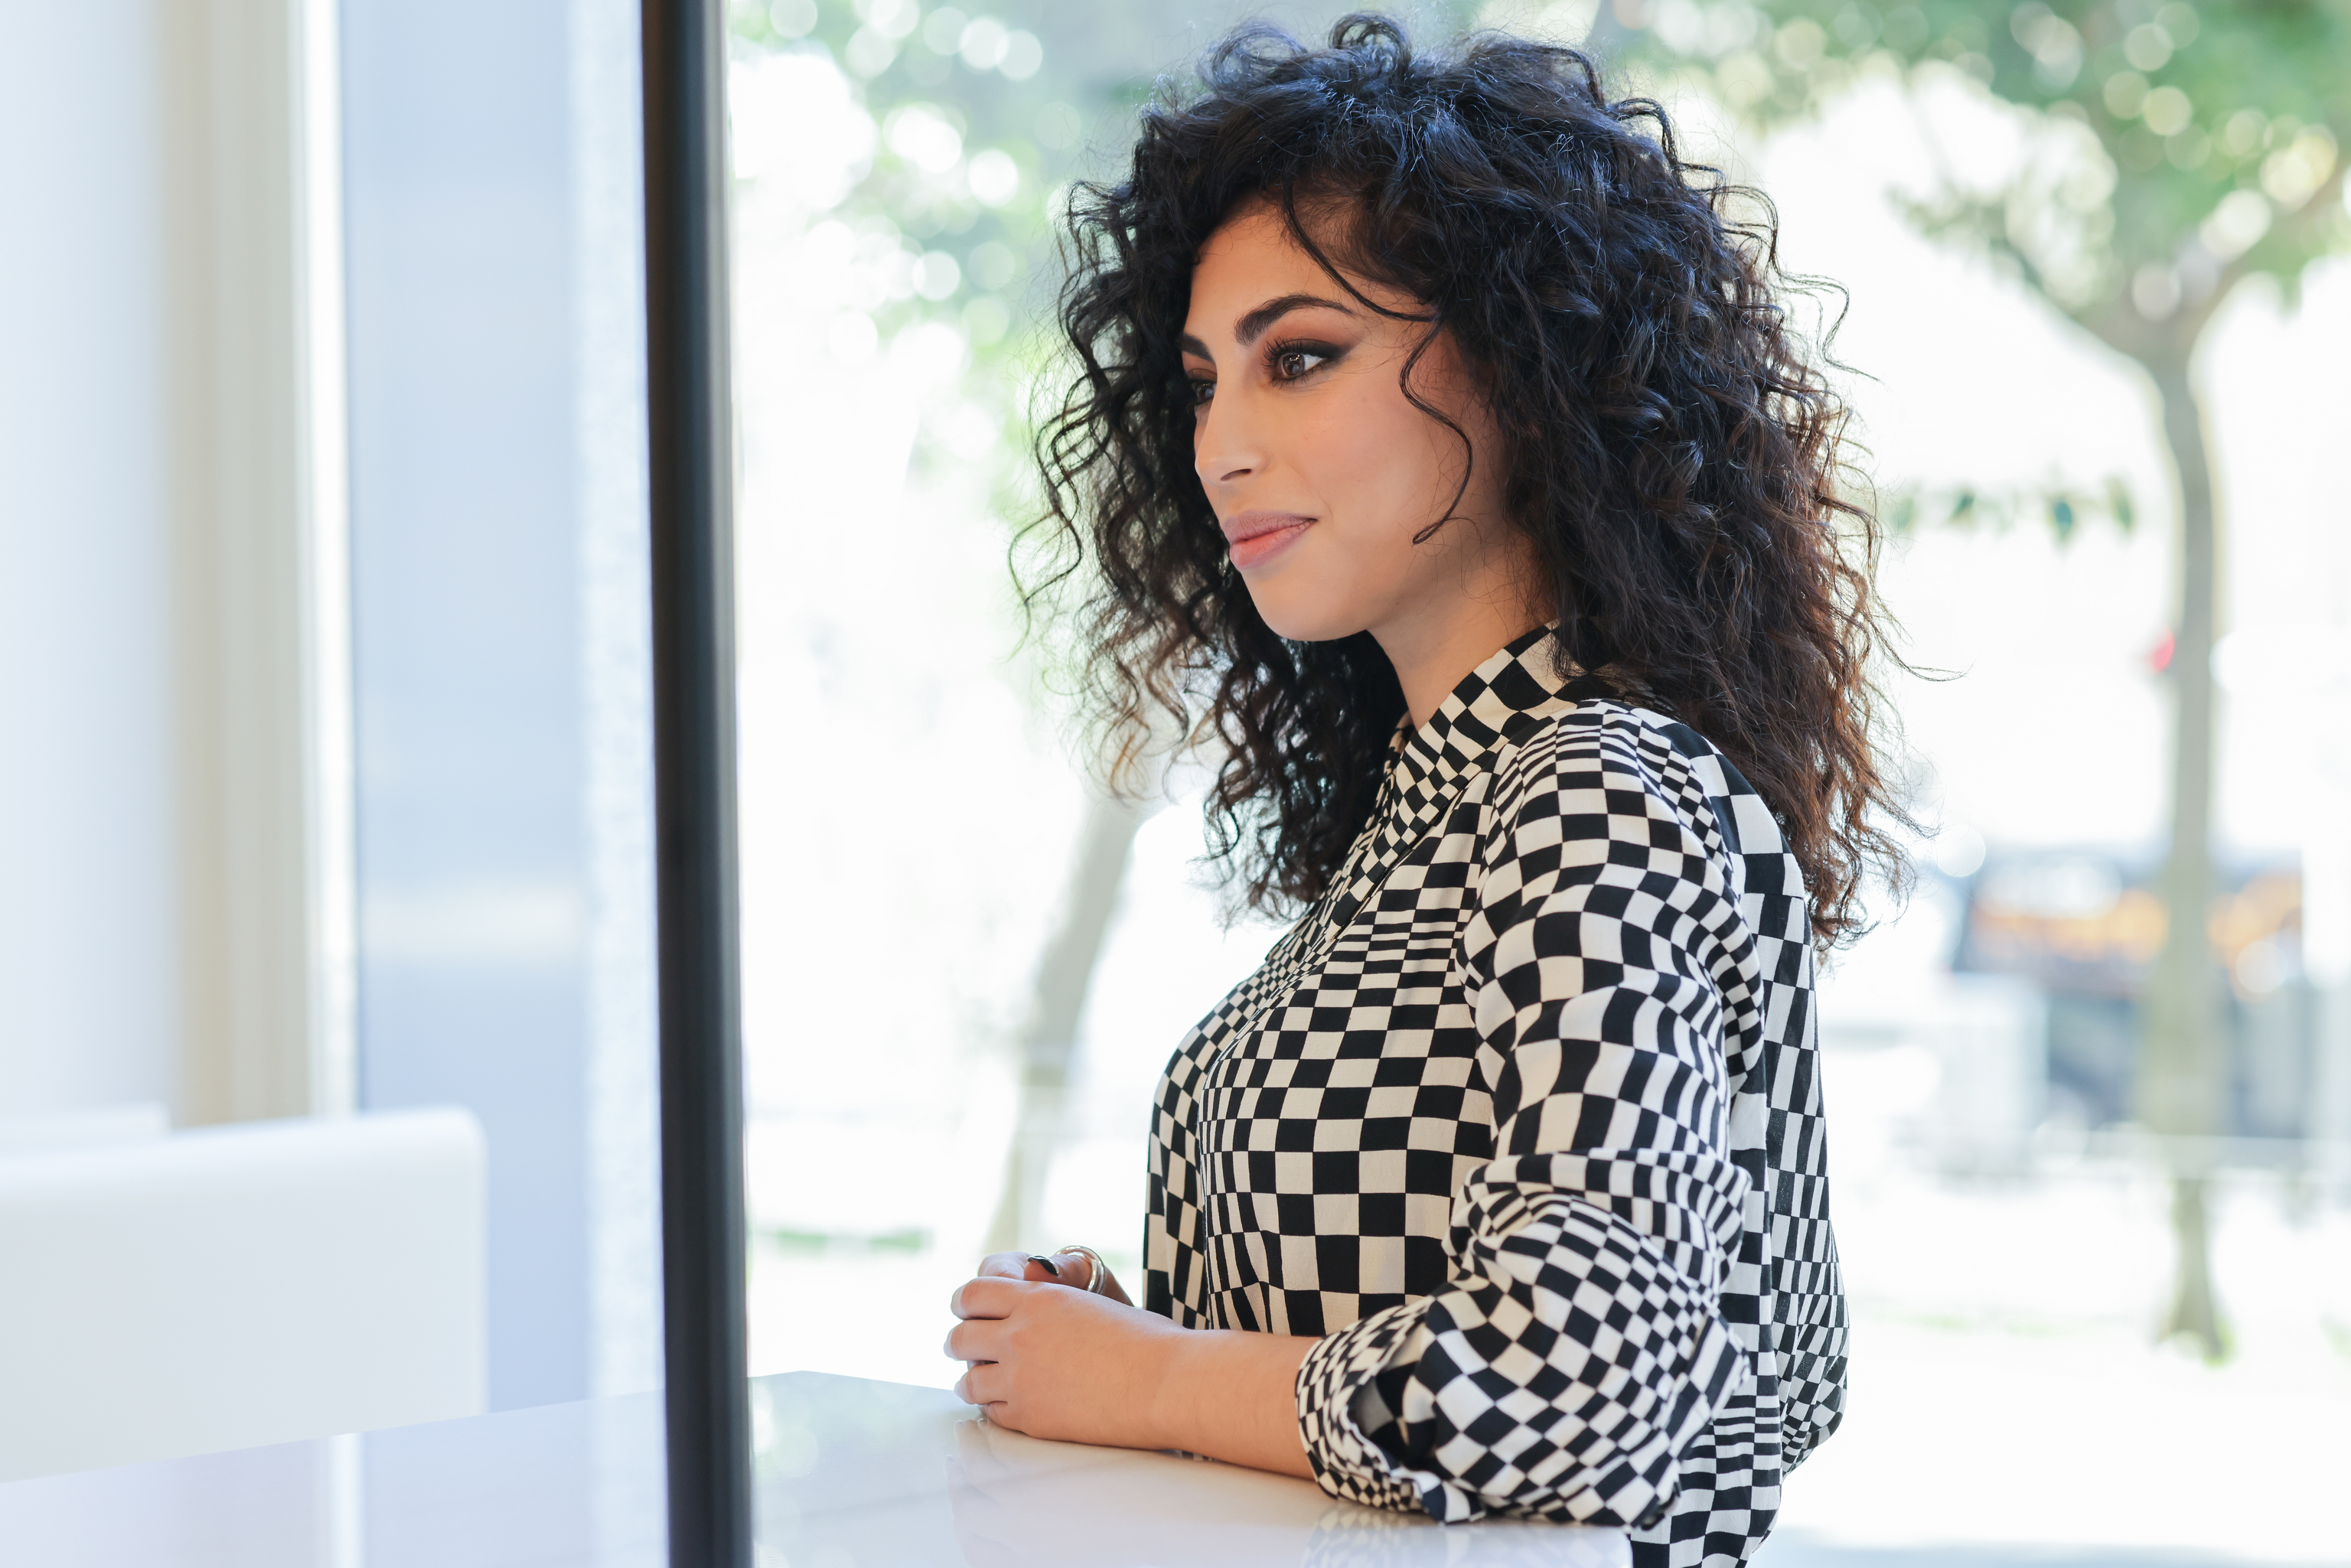 La actriz Mina El Hammani, que presume de pelo rizado.